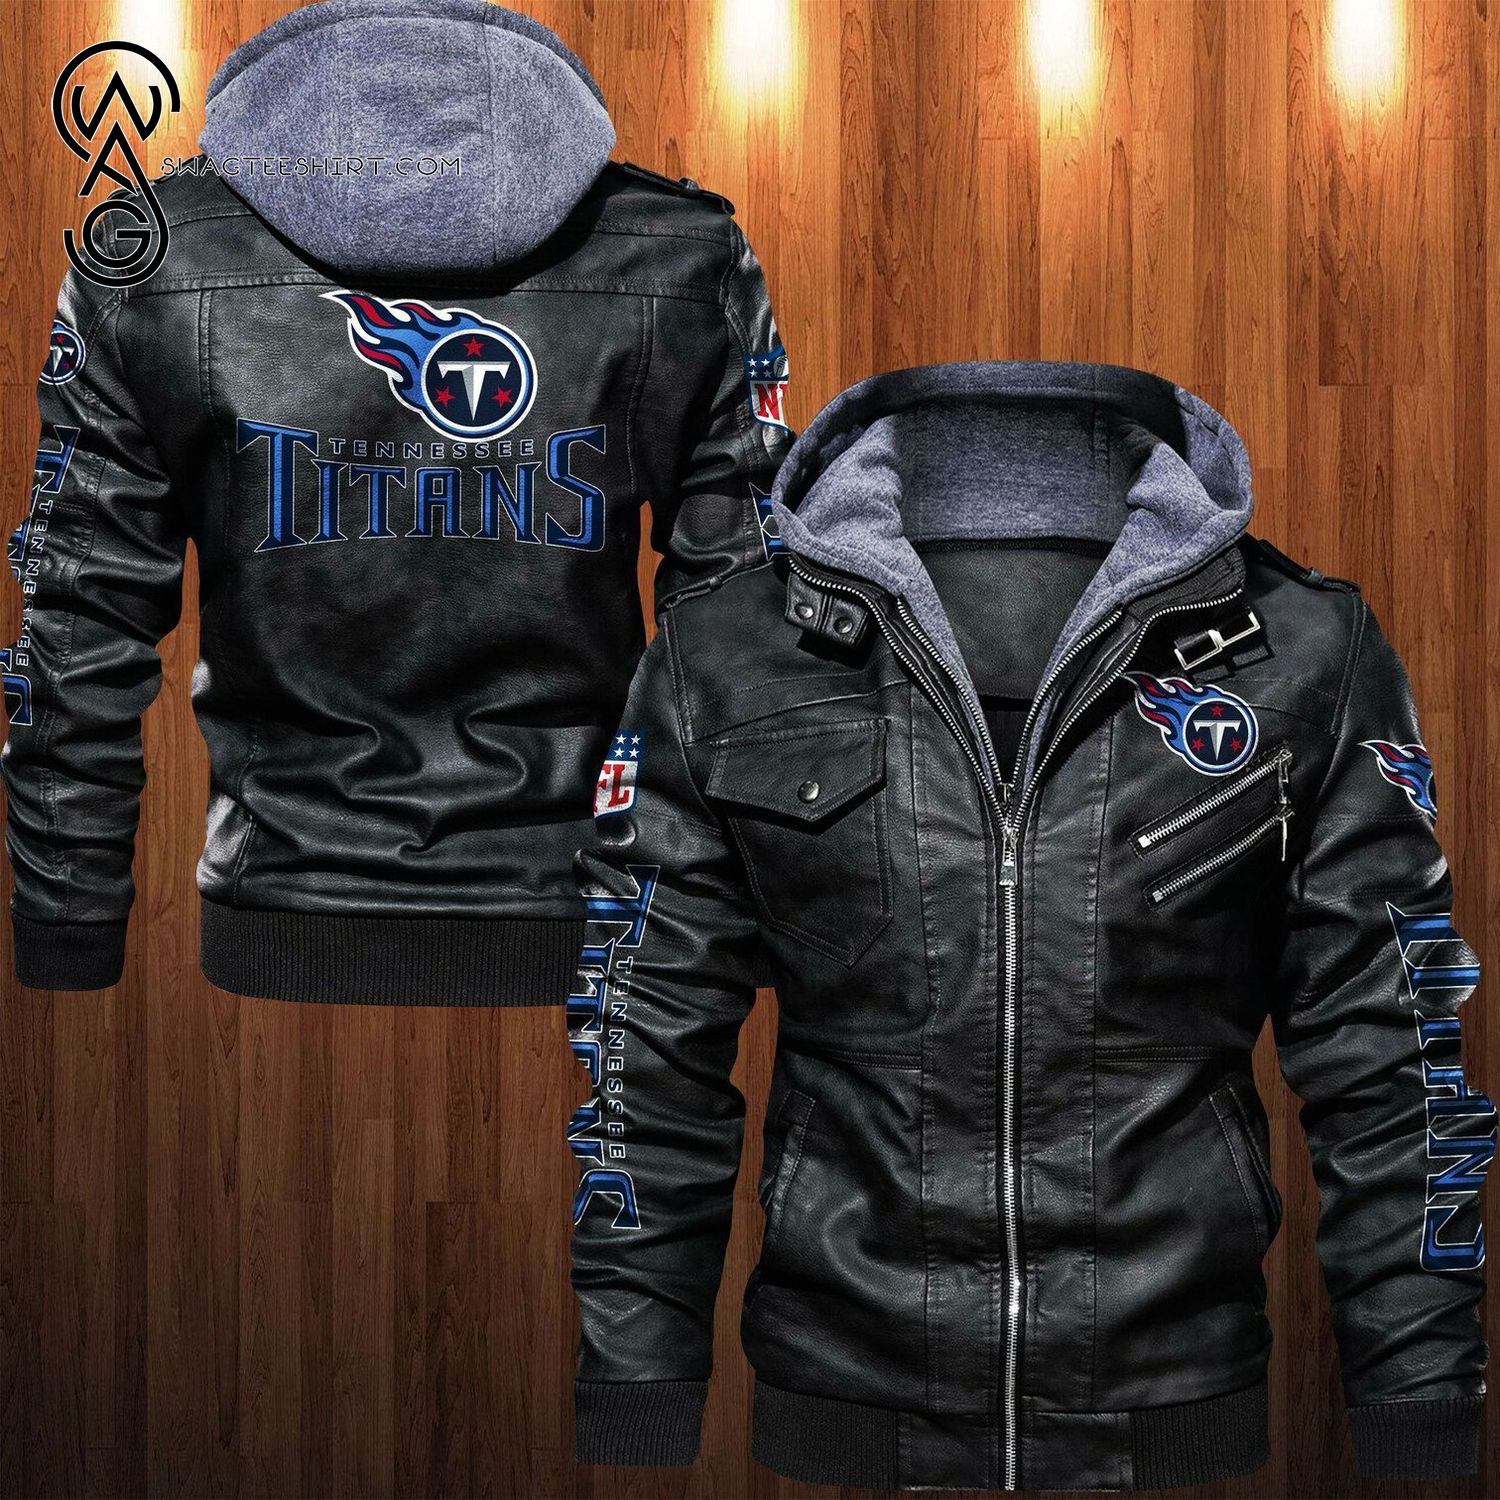 NFL Tennessee Titans Team Leather Jacket